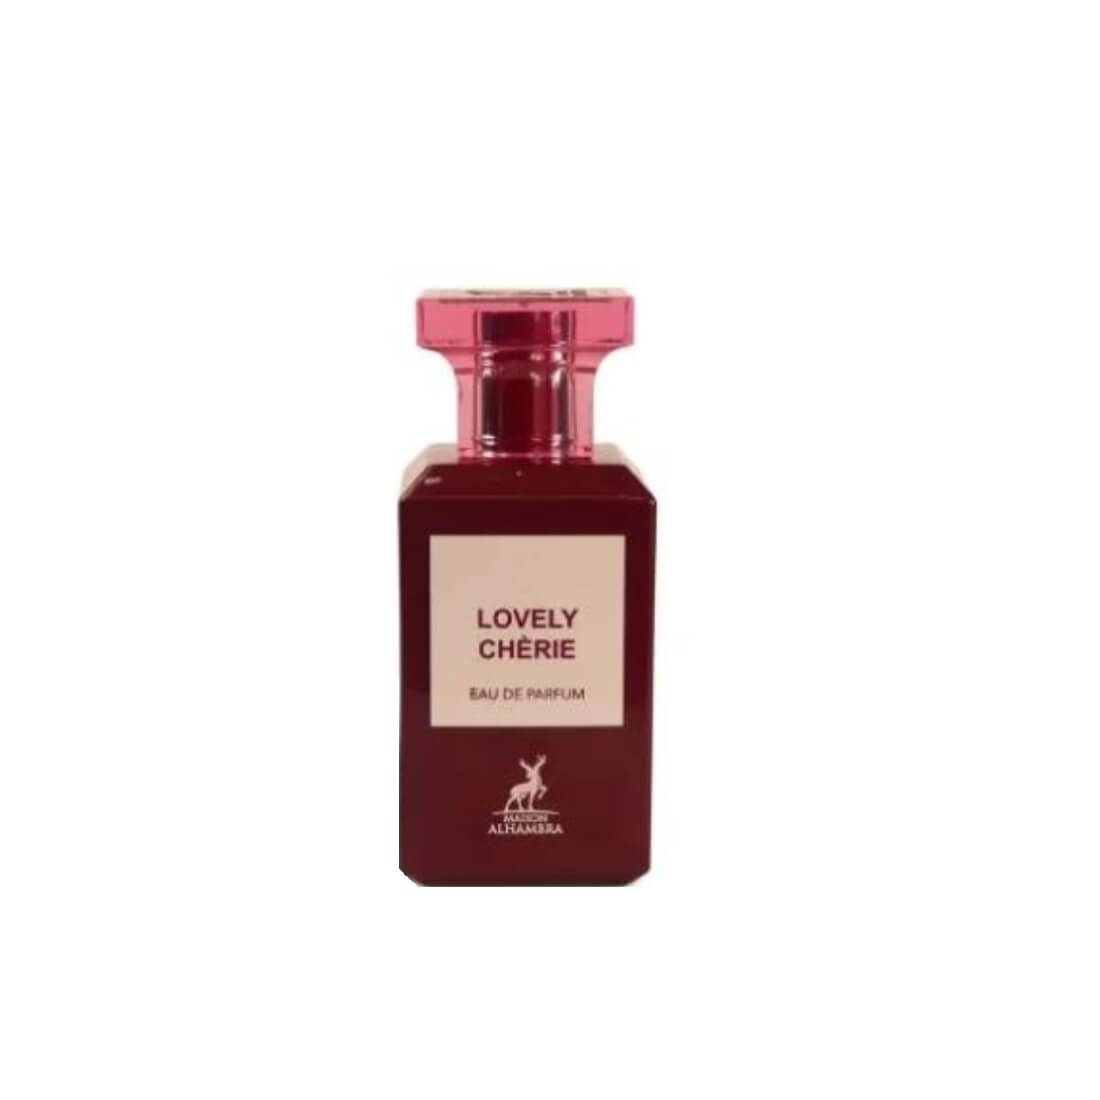 Parfums Lovely Cherie de la marque Maison Alhambra mixte 80 ml